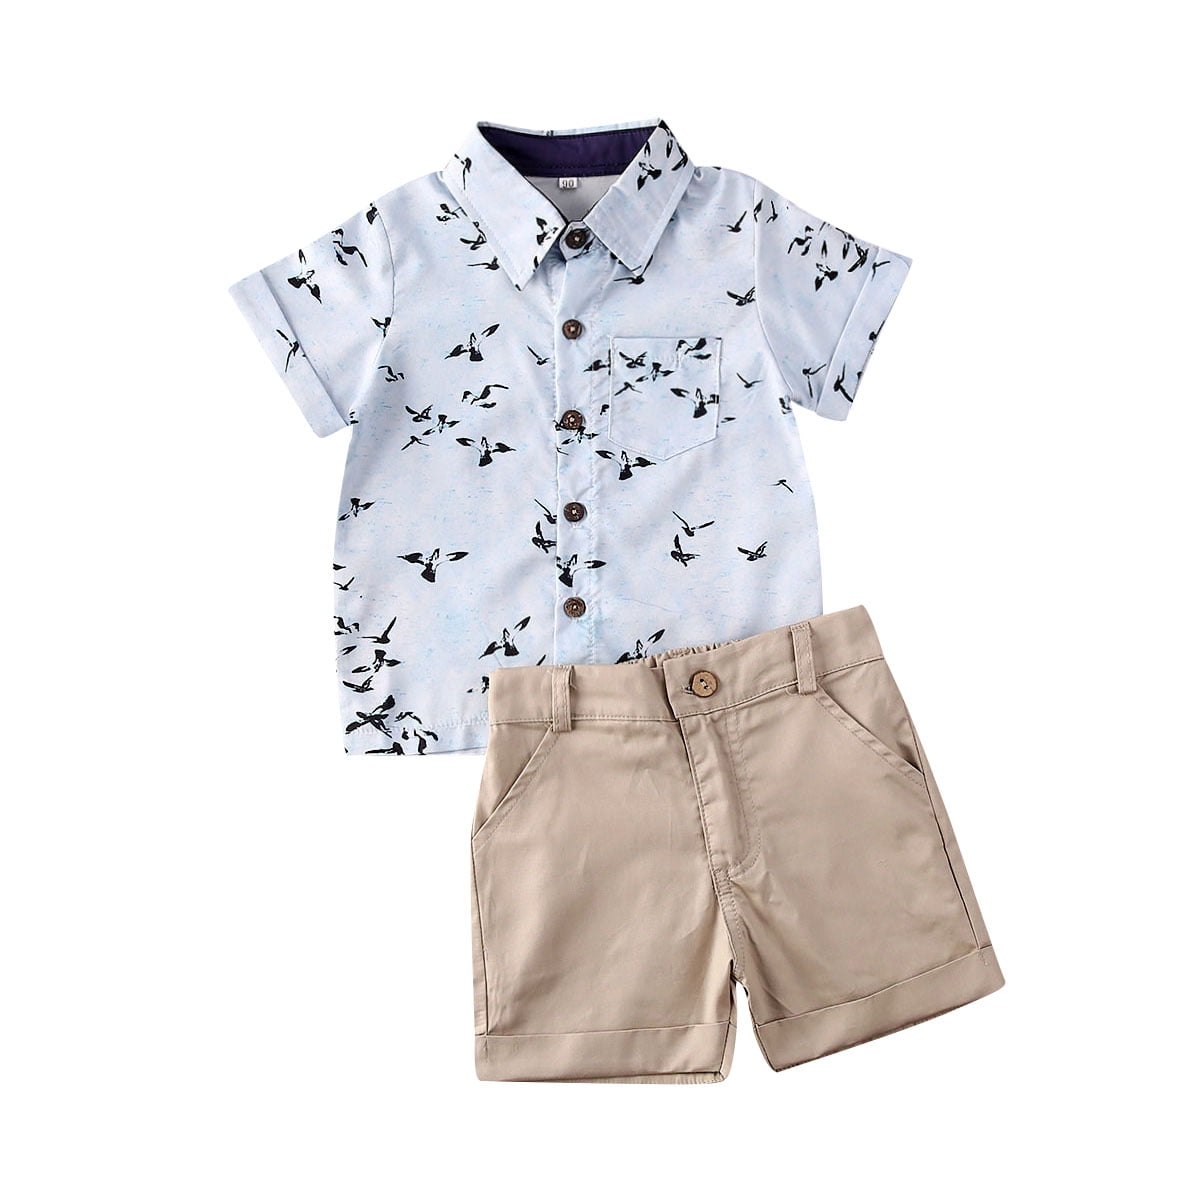 2Pcs Toddler Kid Baby Boy Various Print Tops T shirt+Shorts Outfits Set Clothing 